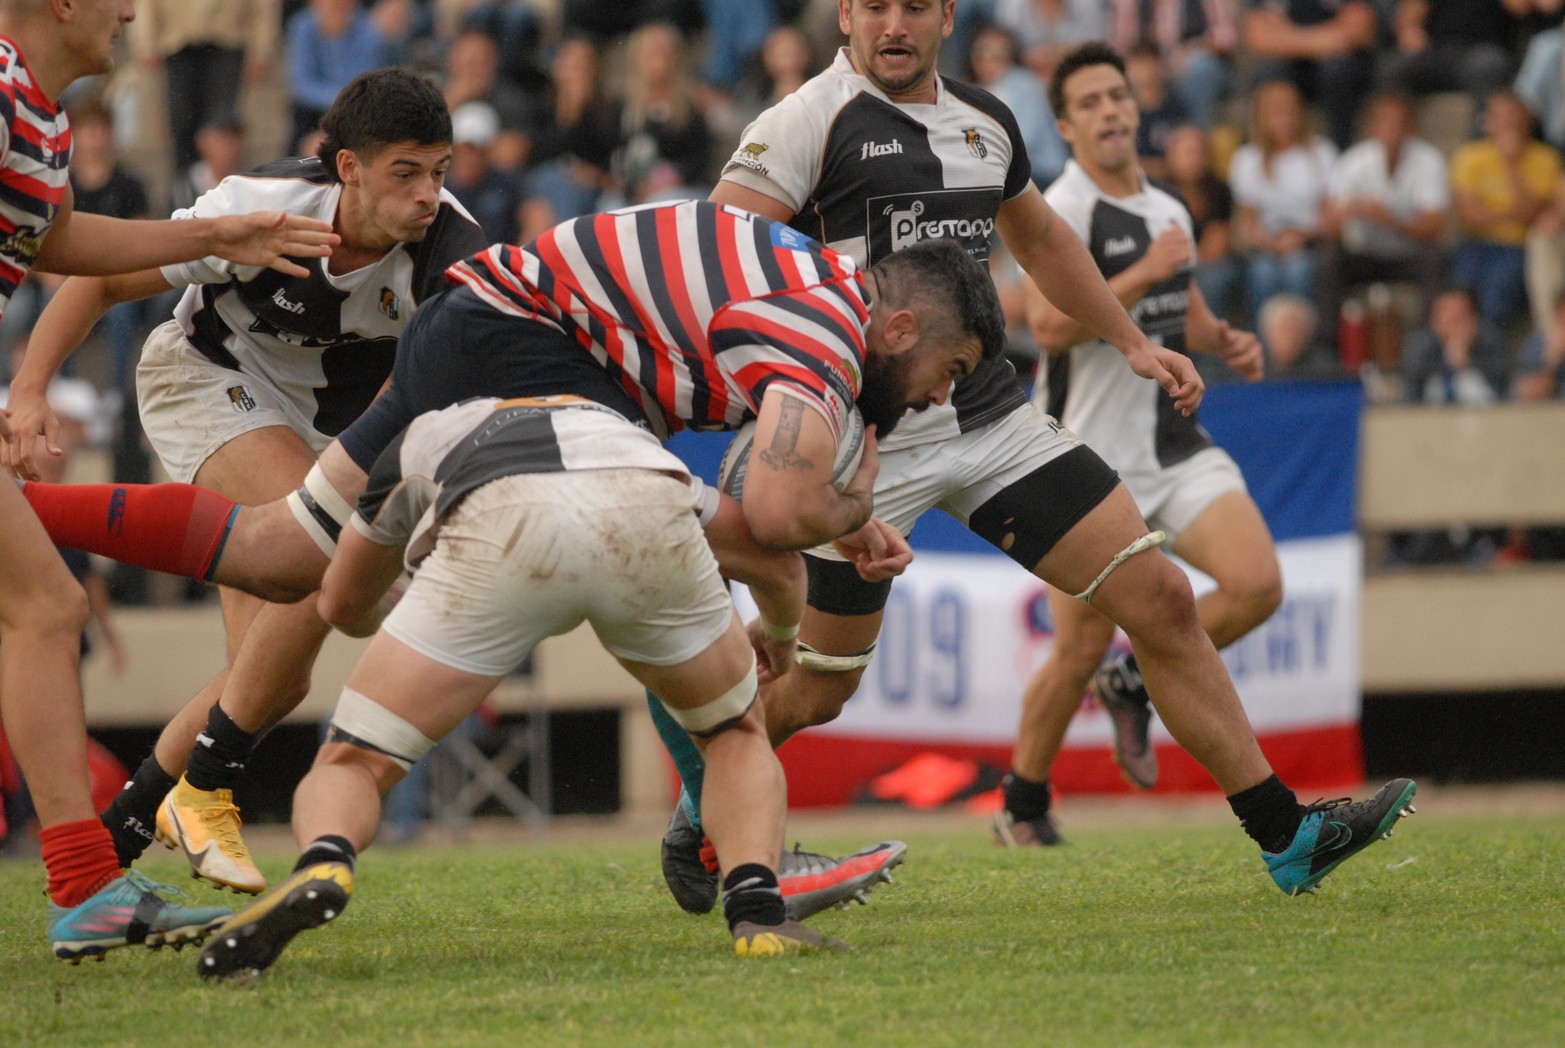 Santa Fe Rugby logró un importante triunfo en Paraná. Dominó y venció 36 a 21 al Club Estudiantes.